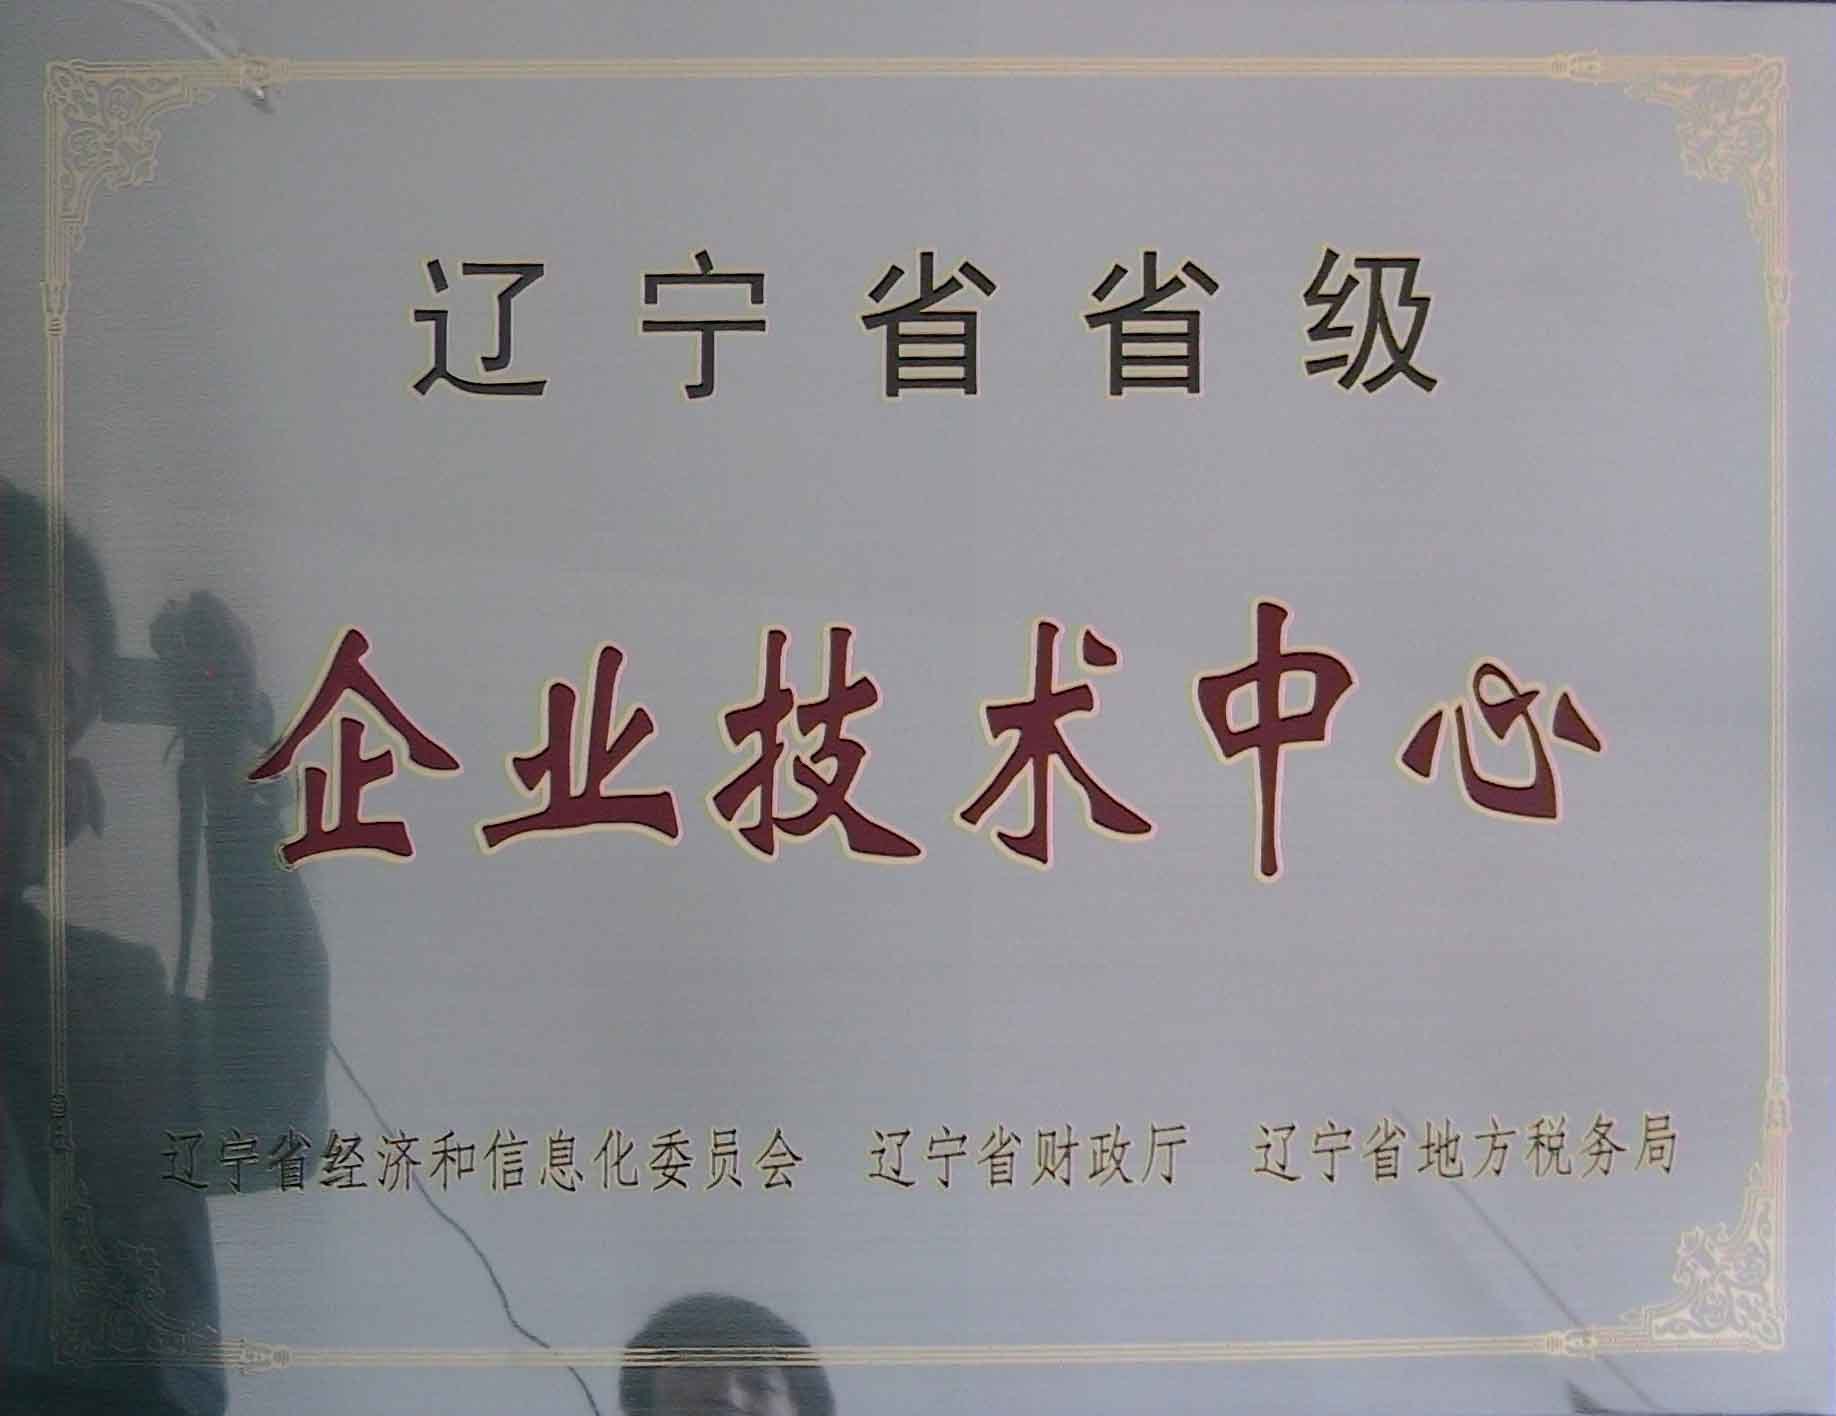 遼寧省企業技術中心